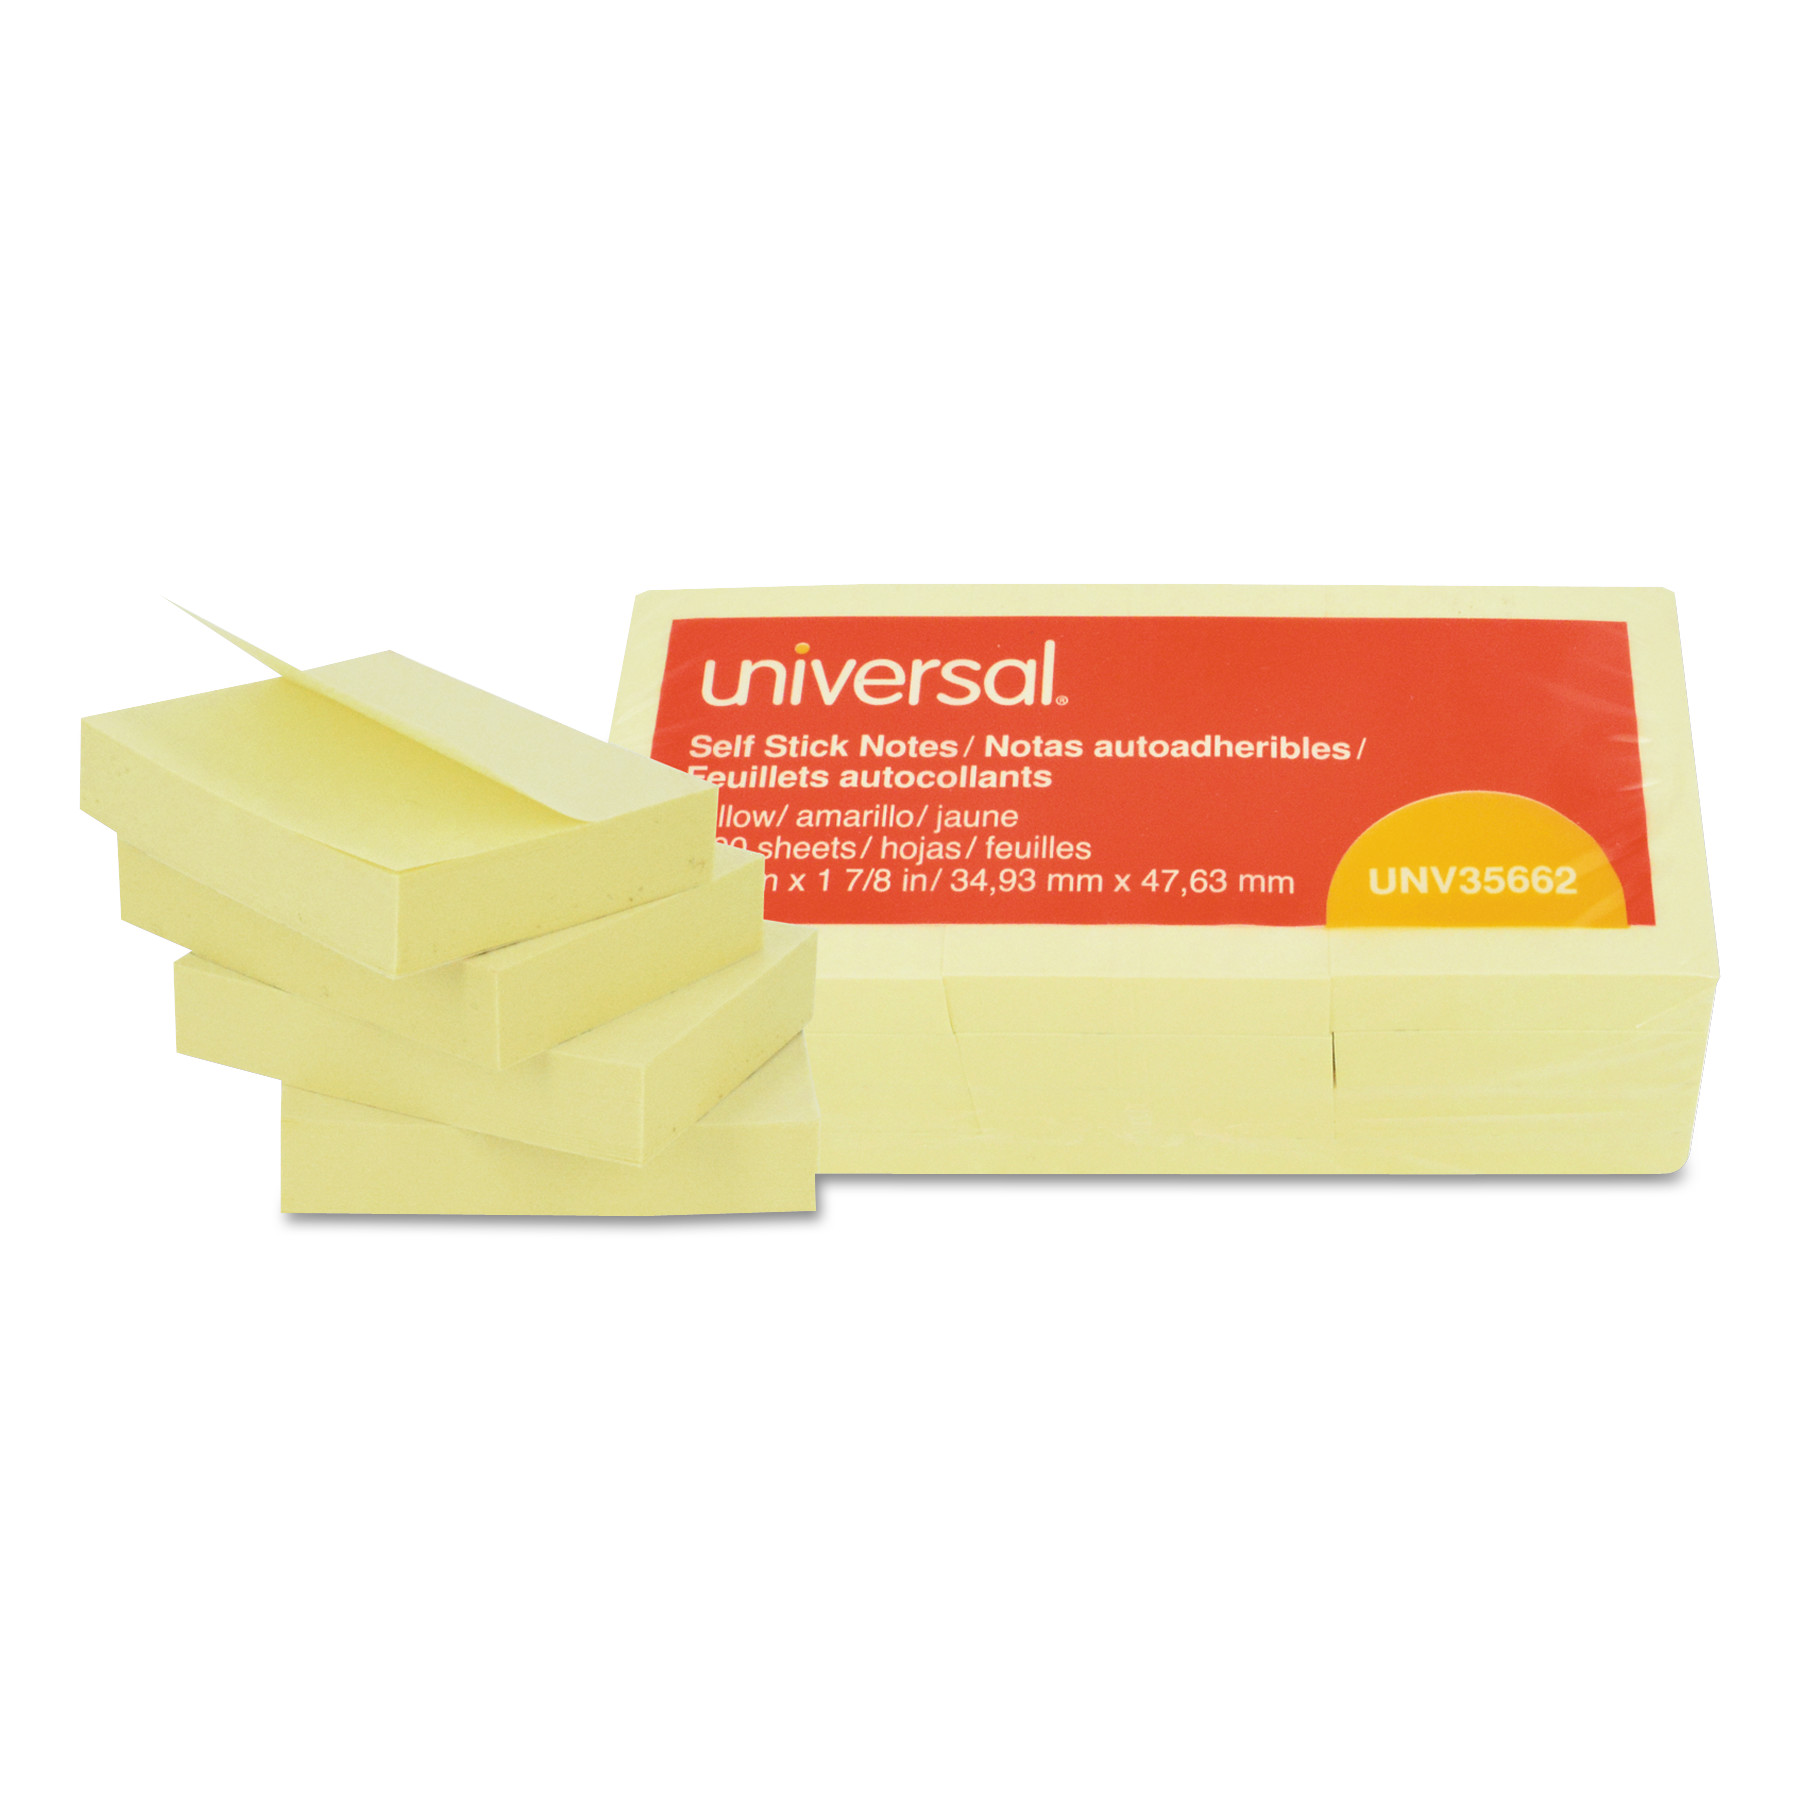  Universal UNV35662 Self-Stick Note Pads, 1 1/2 x 2, Yellow, 12 100-Sheet/Pack (UNV35662) 